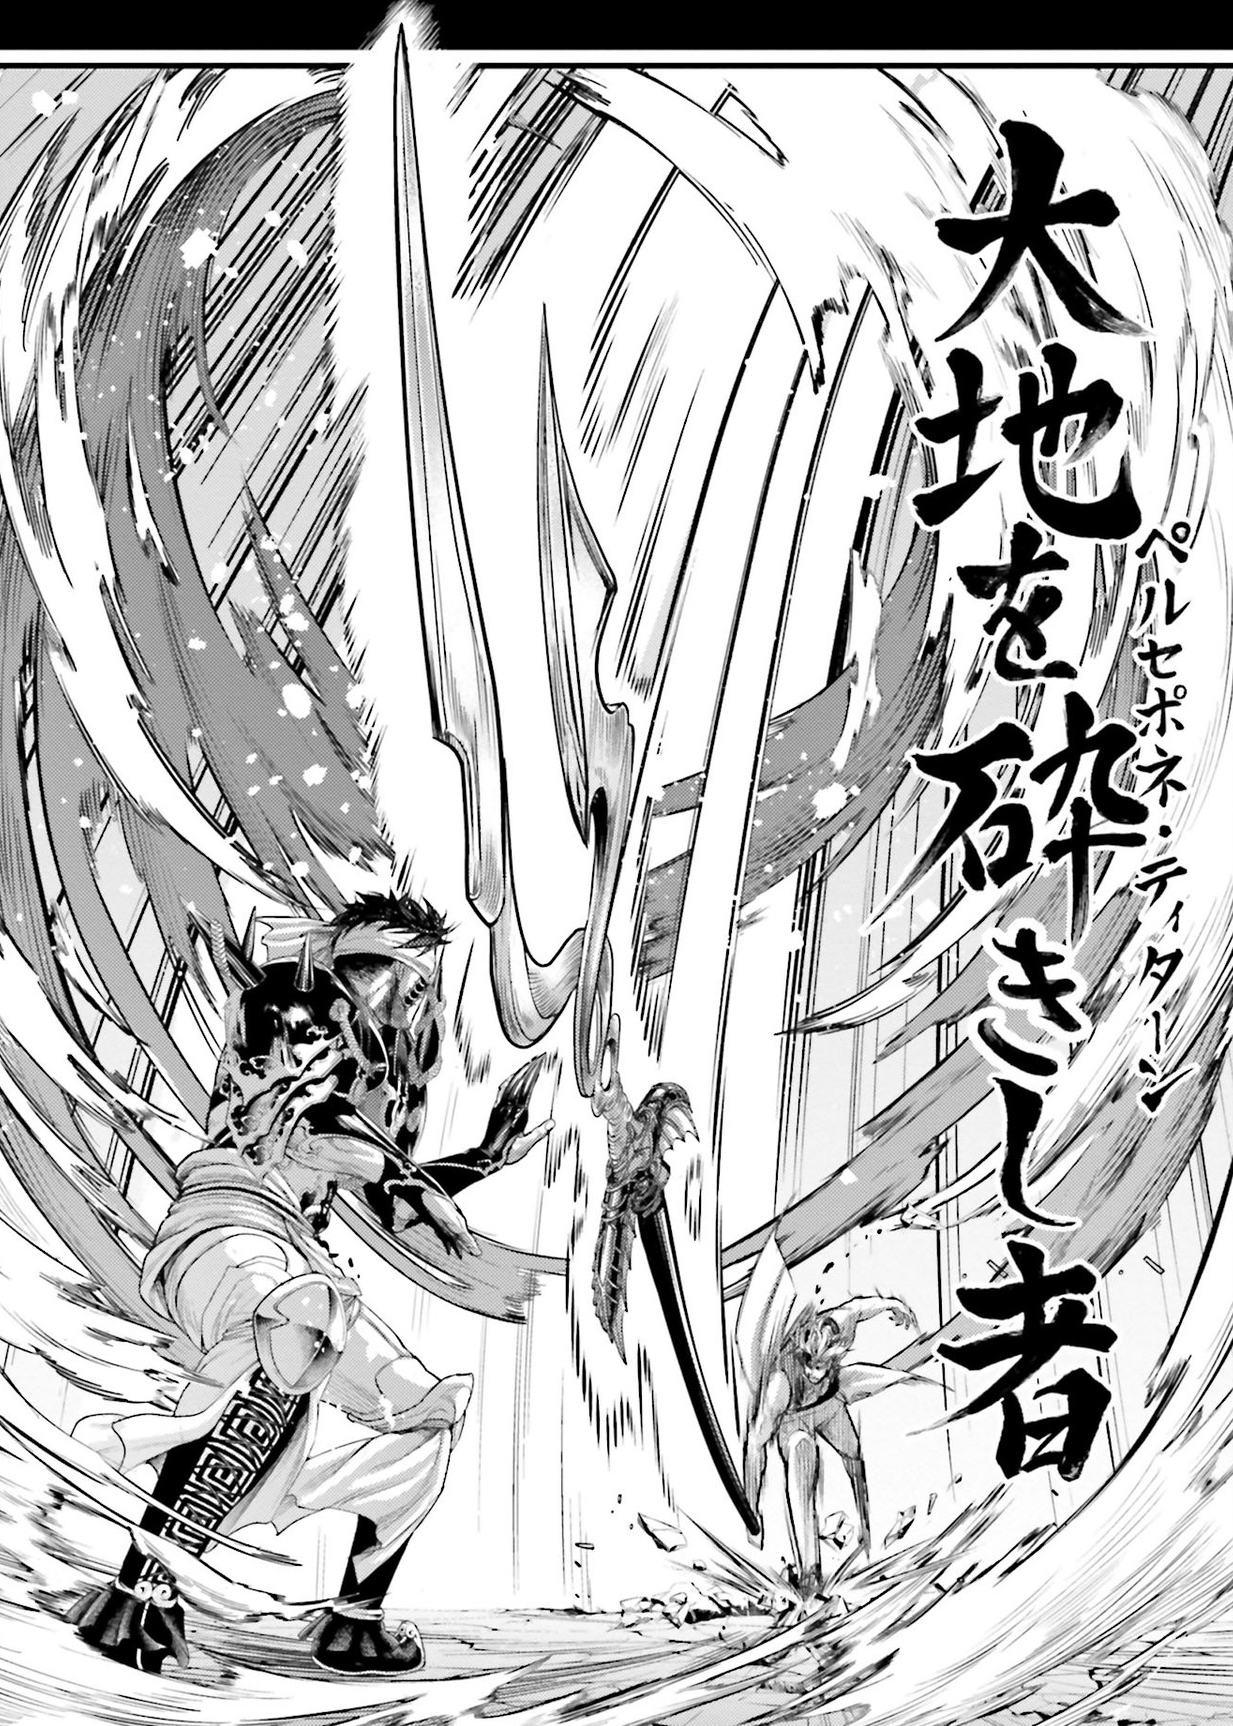 Record of Ragnarok: Hades vs Qin Shi Huang - Who will win?